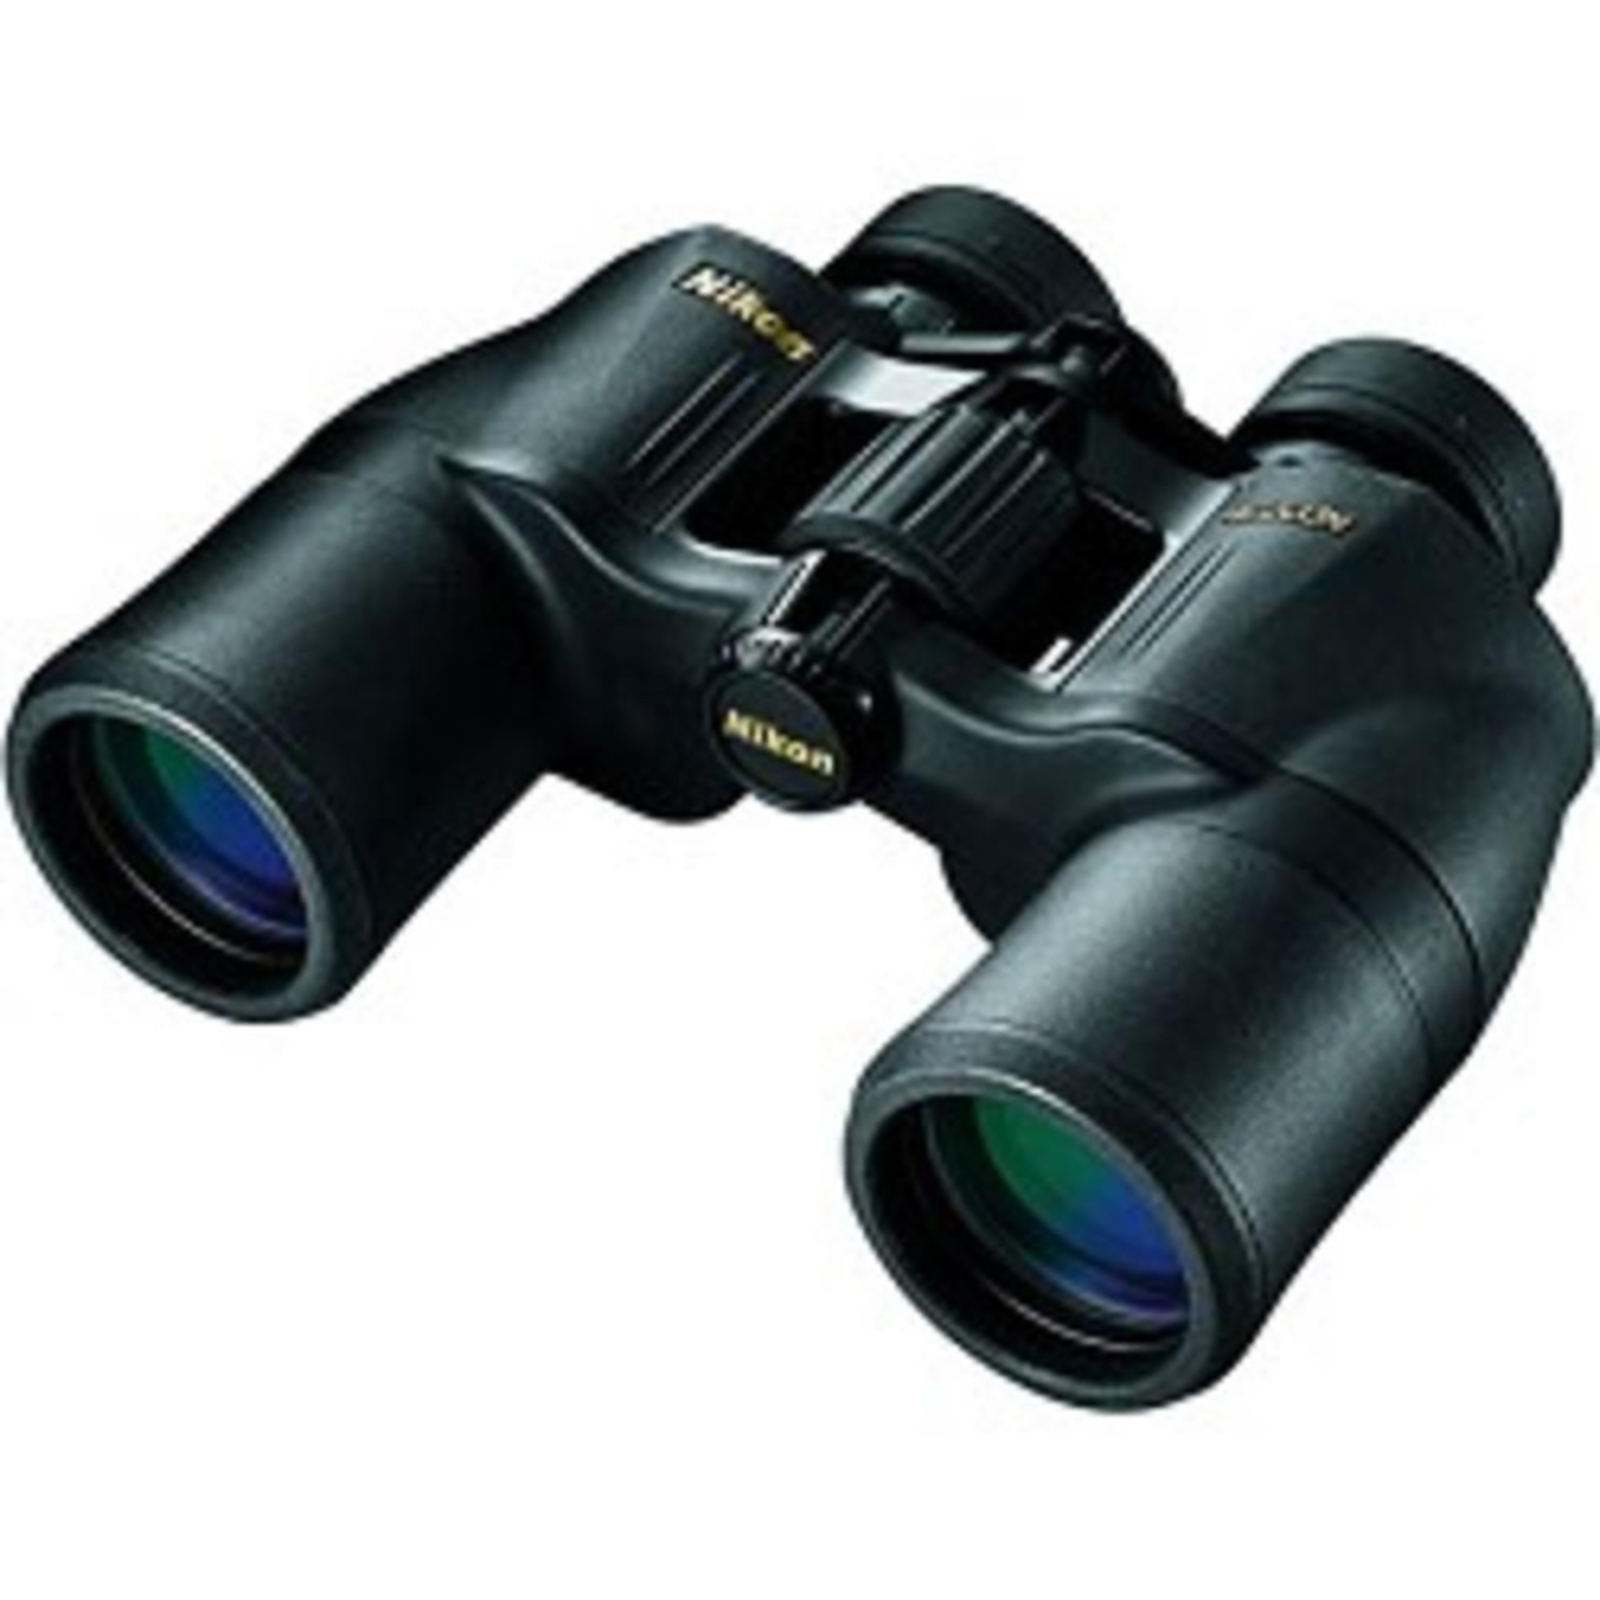 Nikon ACULON A211 16x50 Binocular - Black